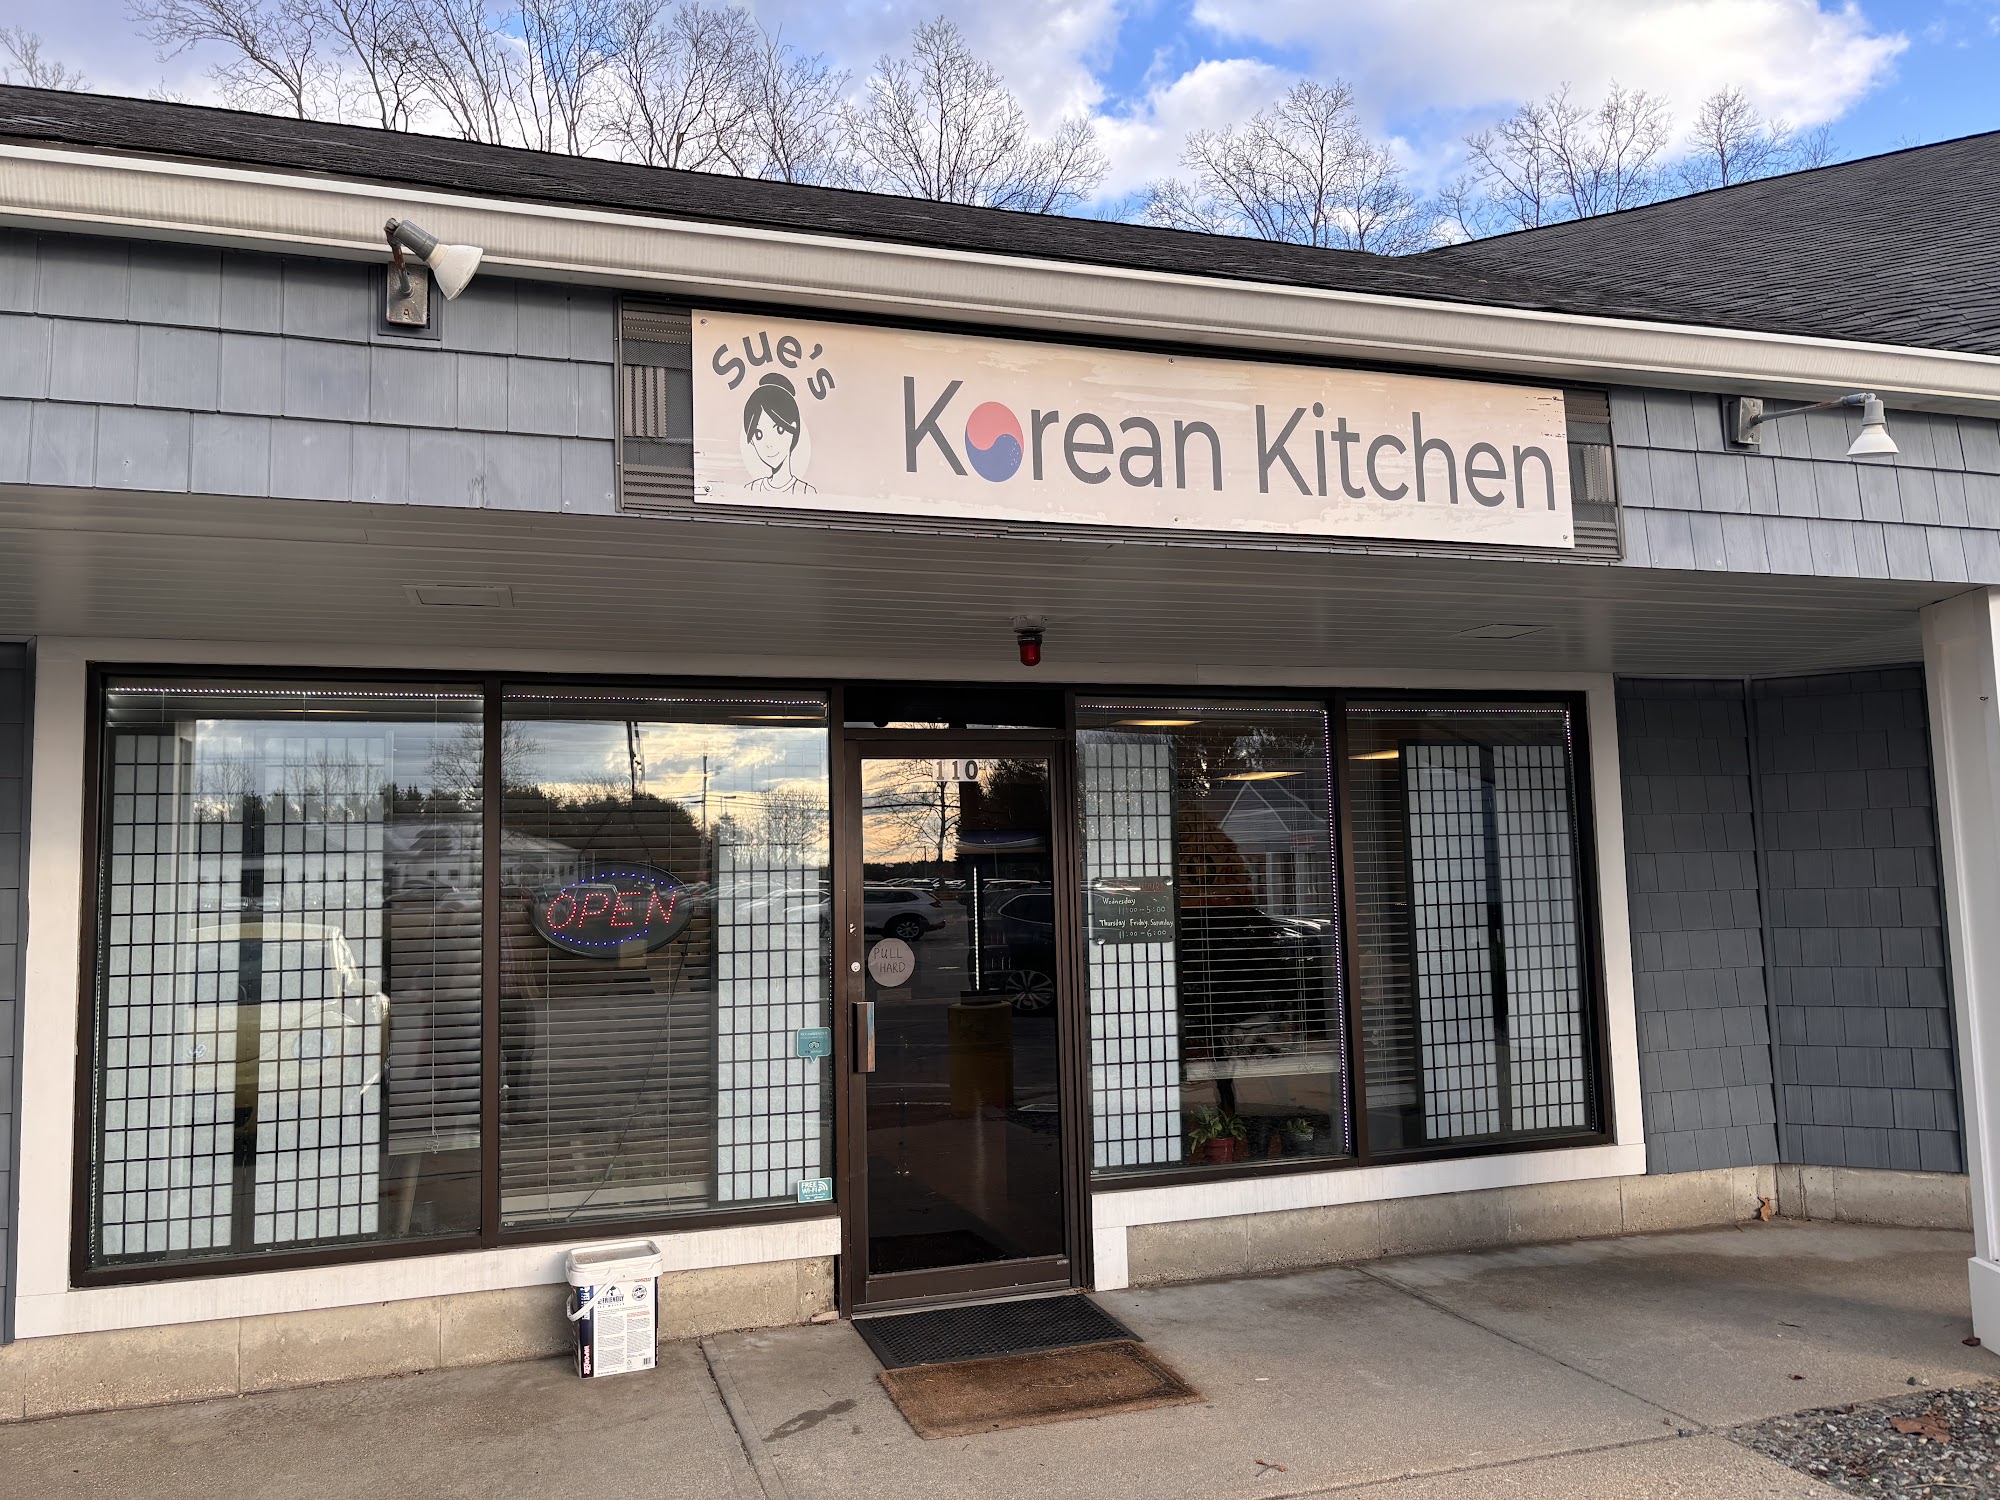 Sue's Korean Kitchen